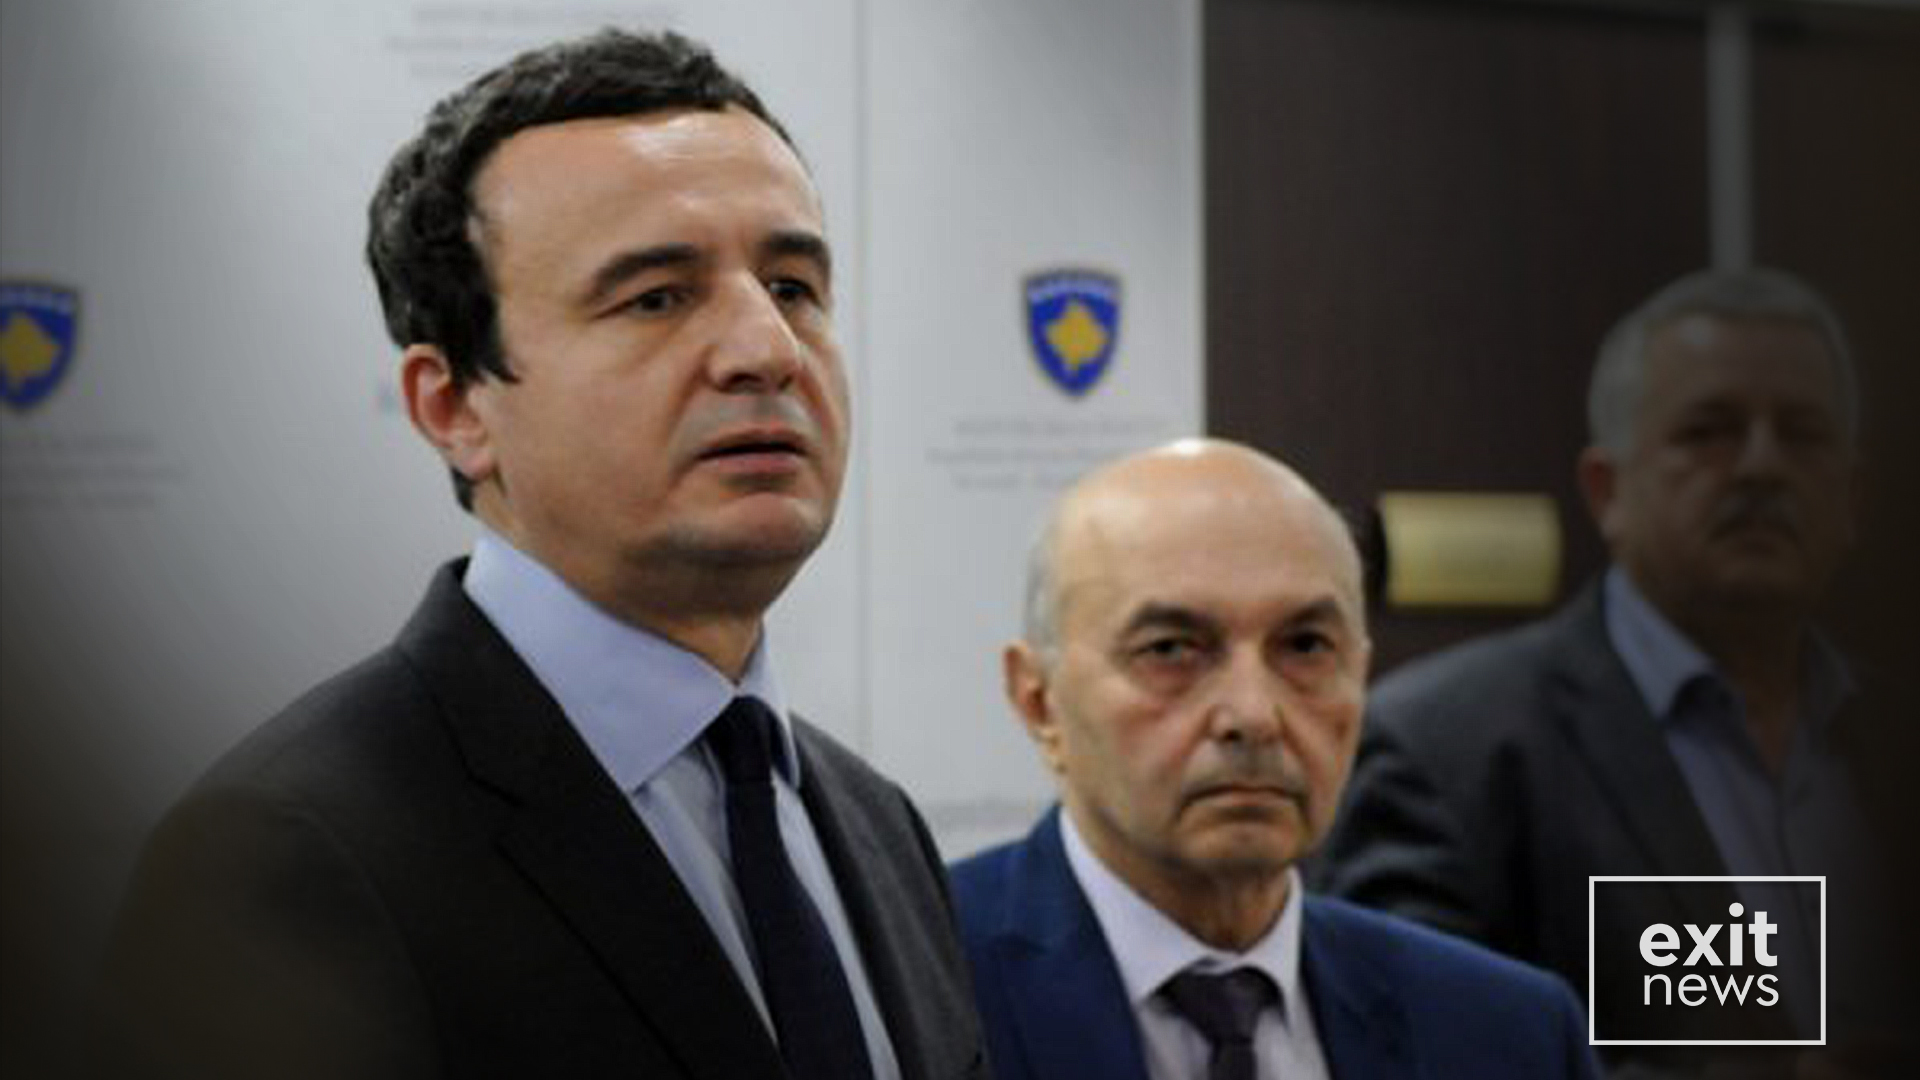 Qeveria e Kosovës në krizë pas shkarkimit të ministrit të brendshëm